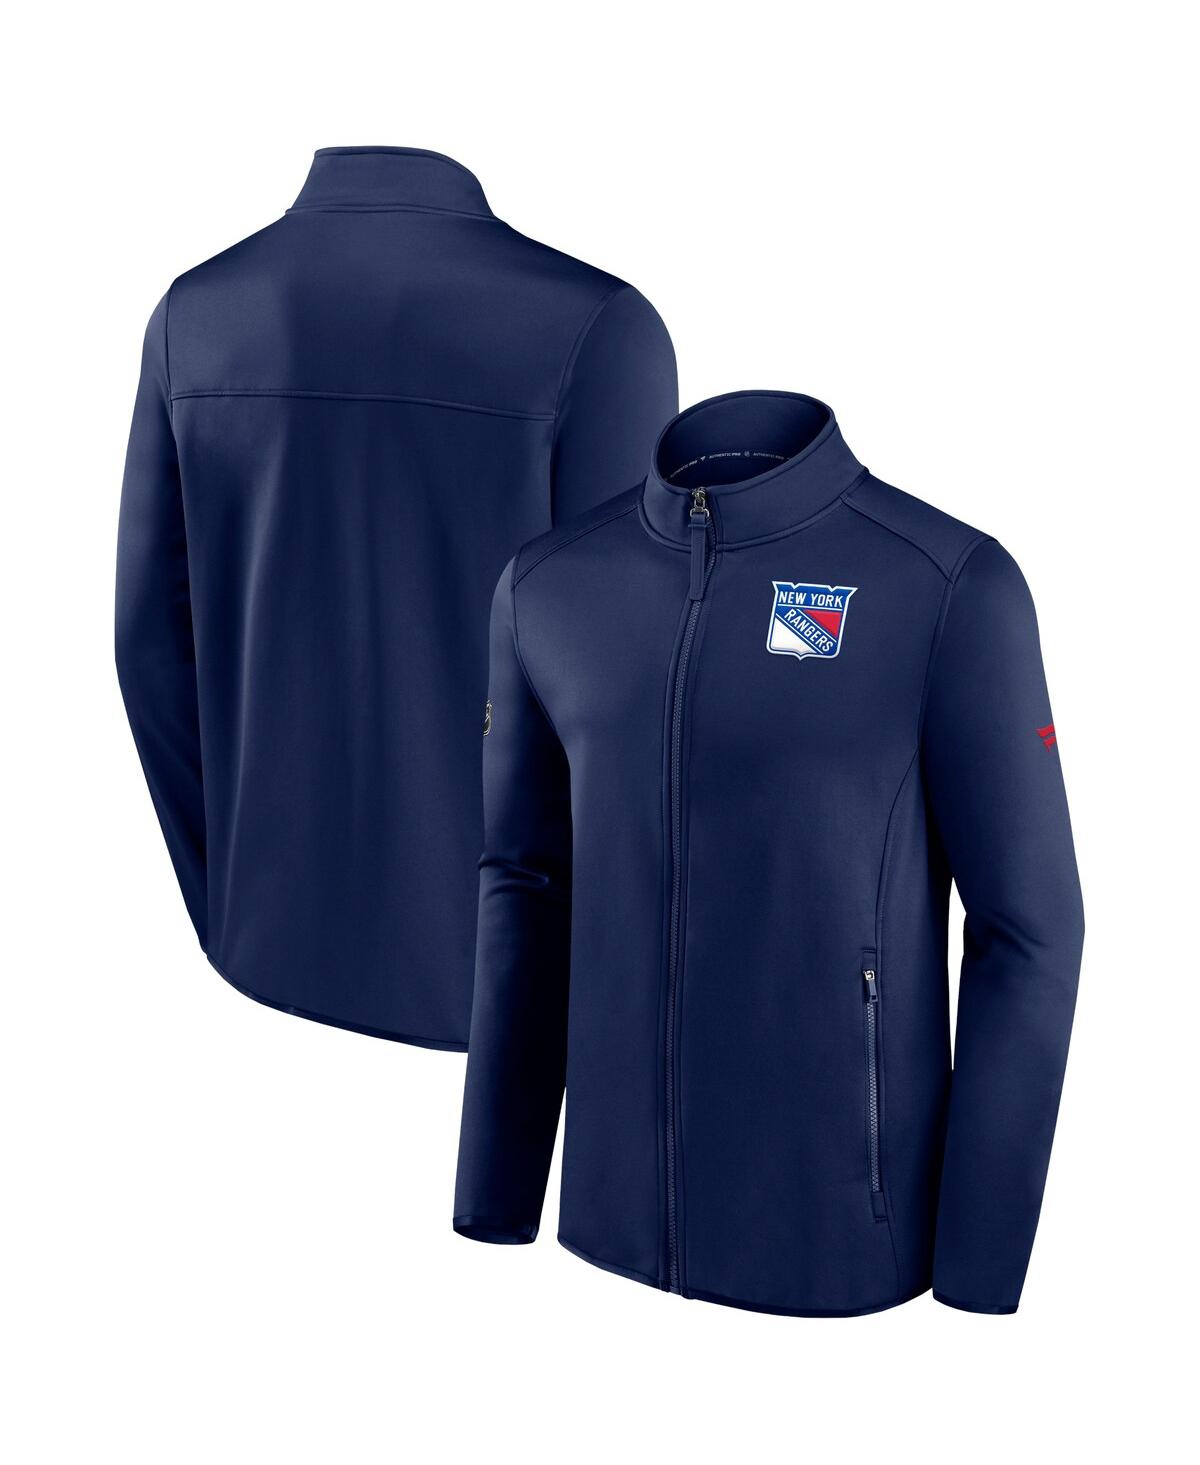 Shop Fanatics Men's  Navy New York Rangers Authentic Pro Rink Fleece Full-zip Jacket